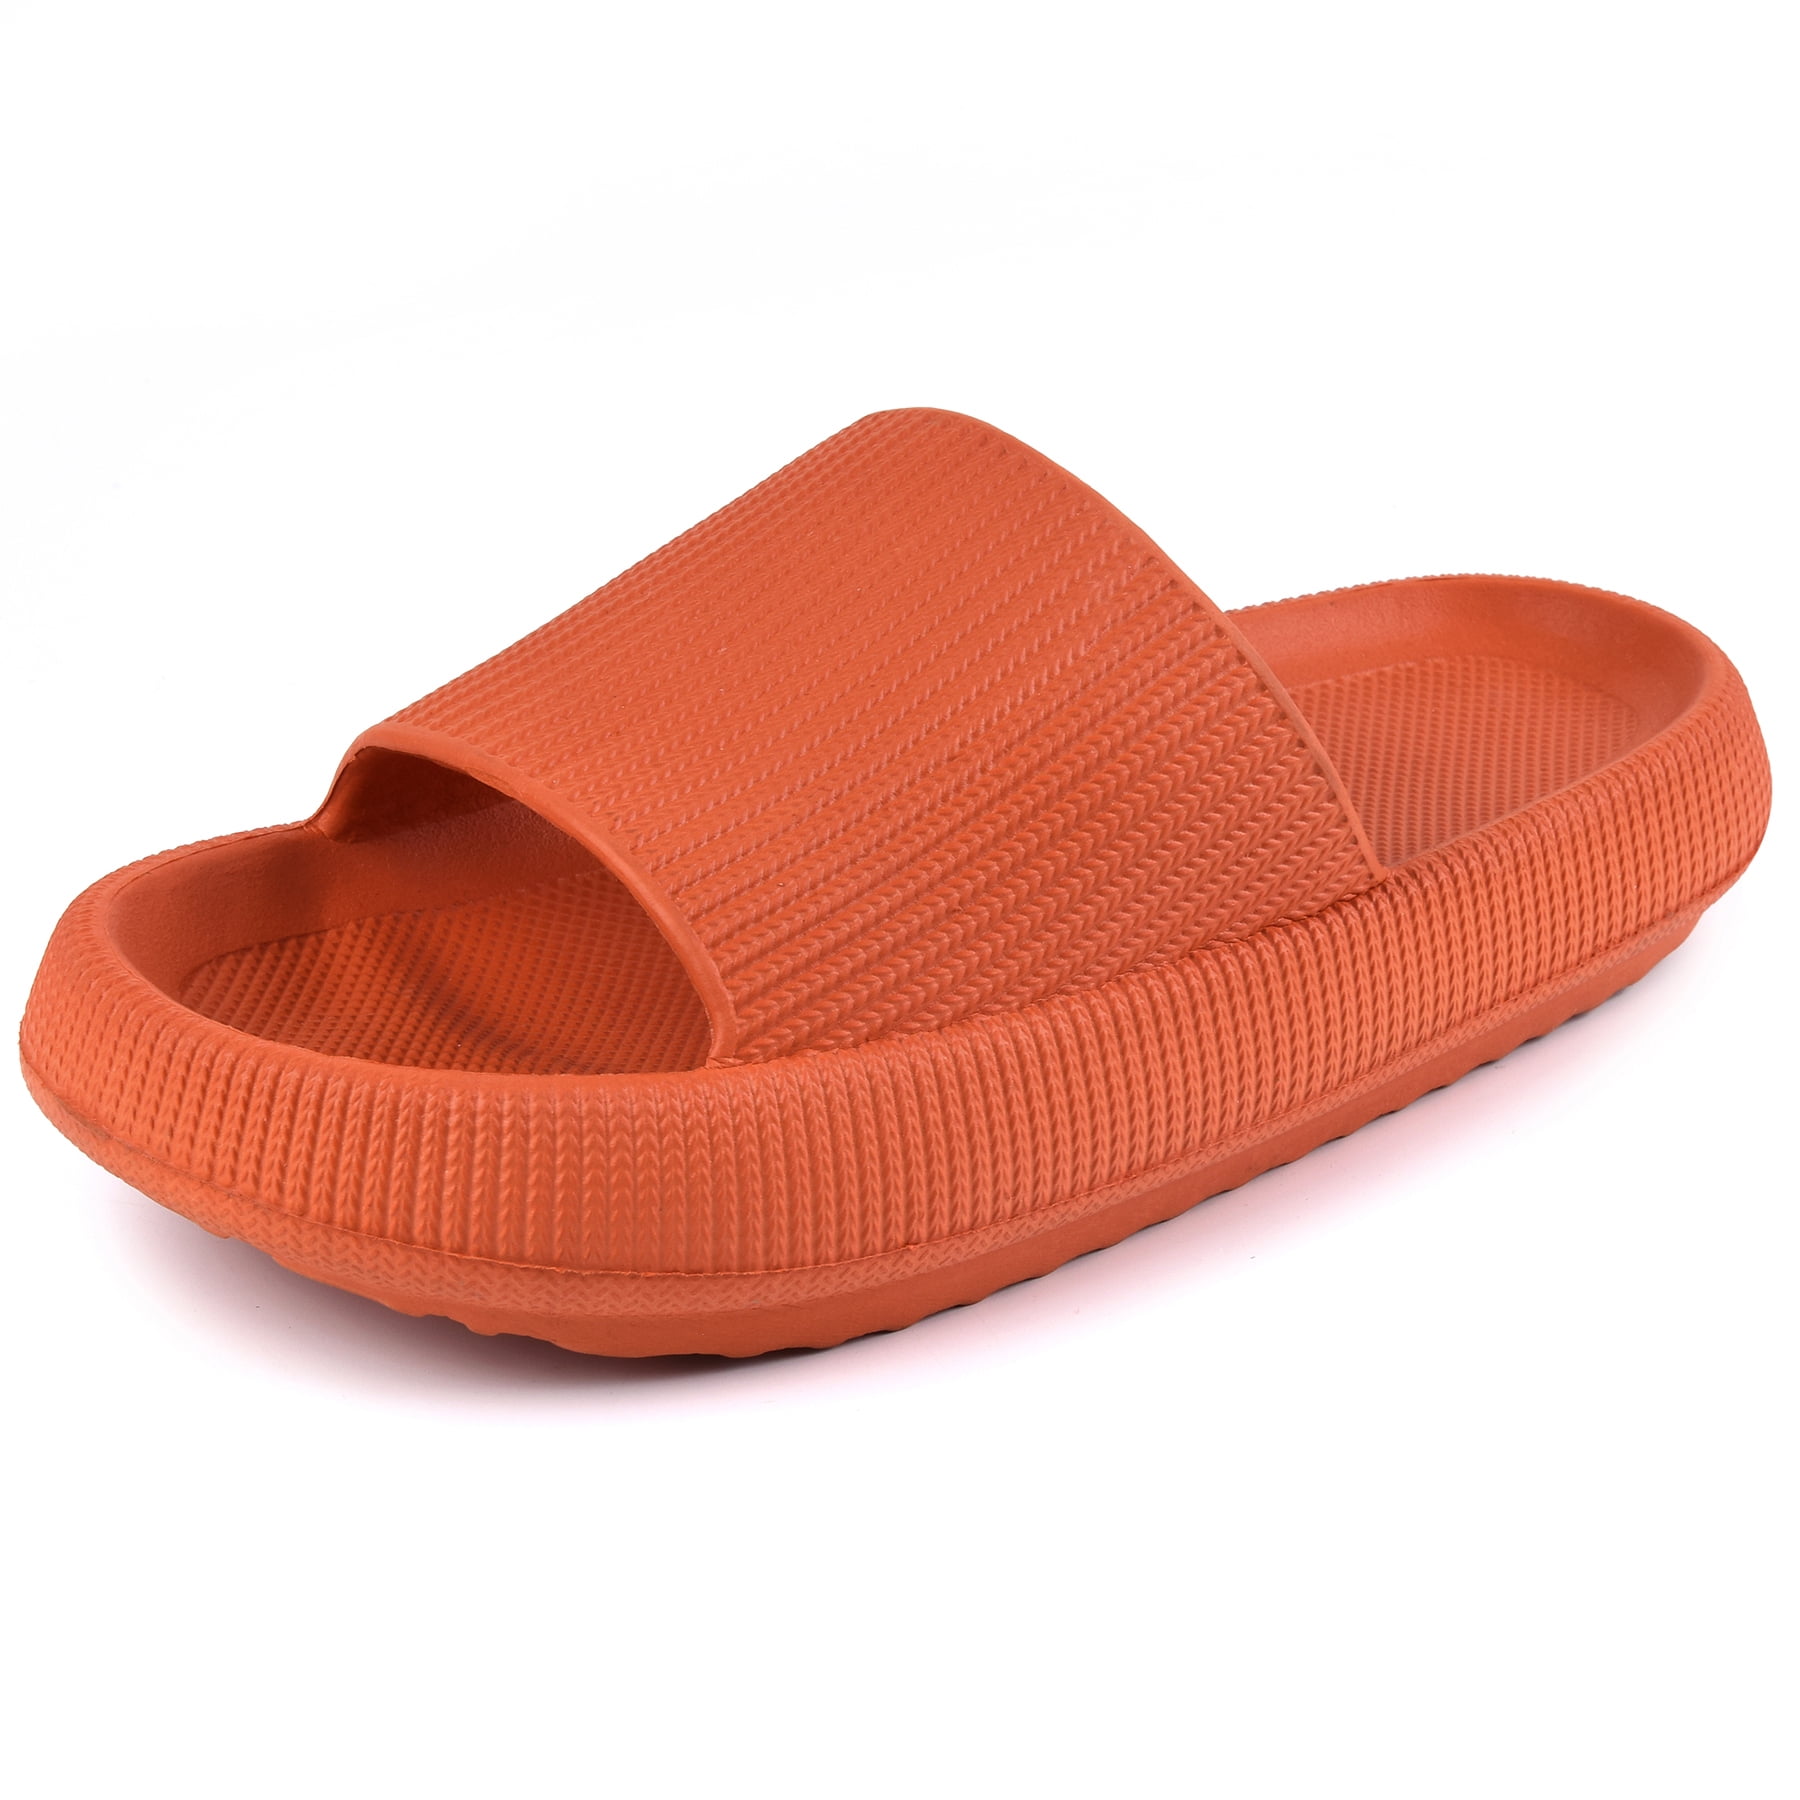 New Men's Rubber Easy Slip on Sport Slide Sandal Flip Flops Shoe's All Sizes 